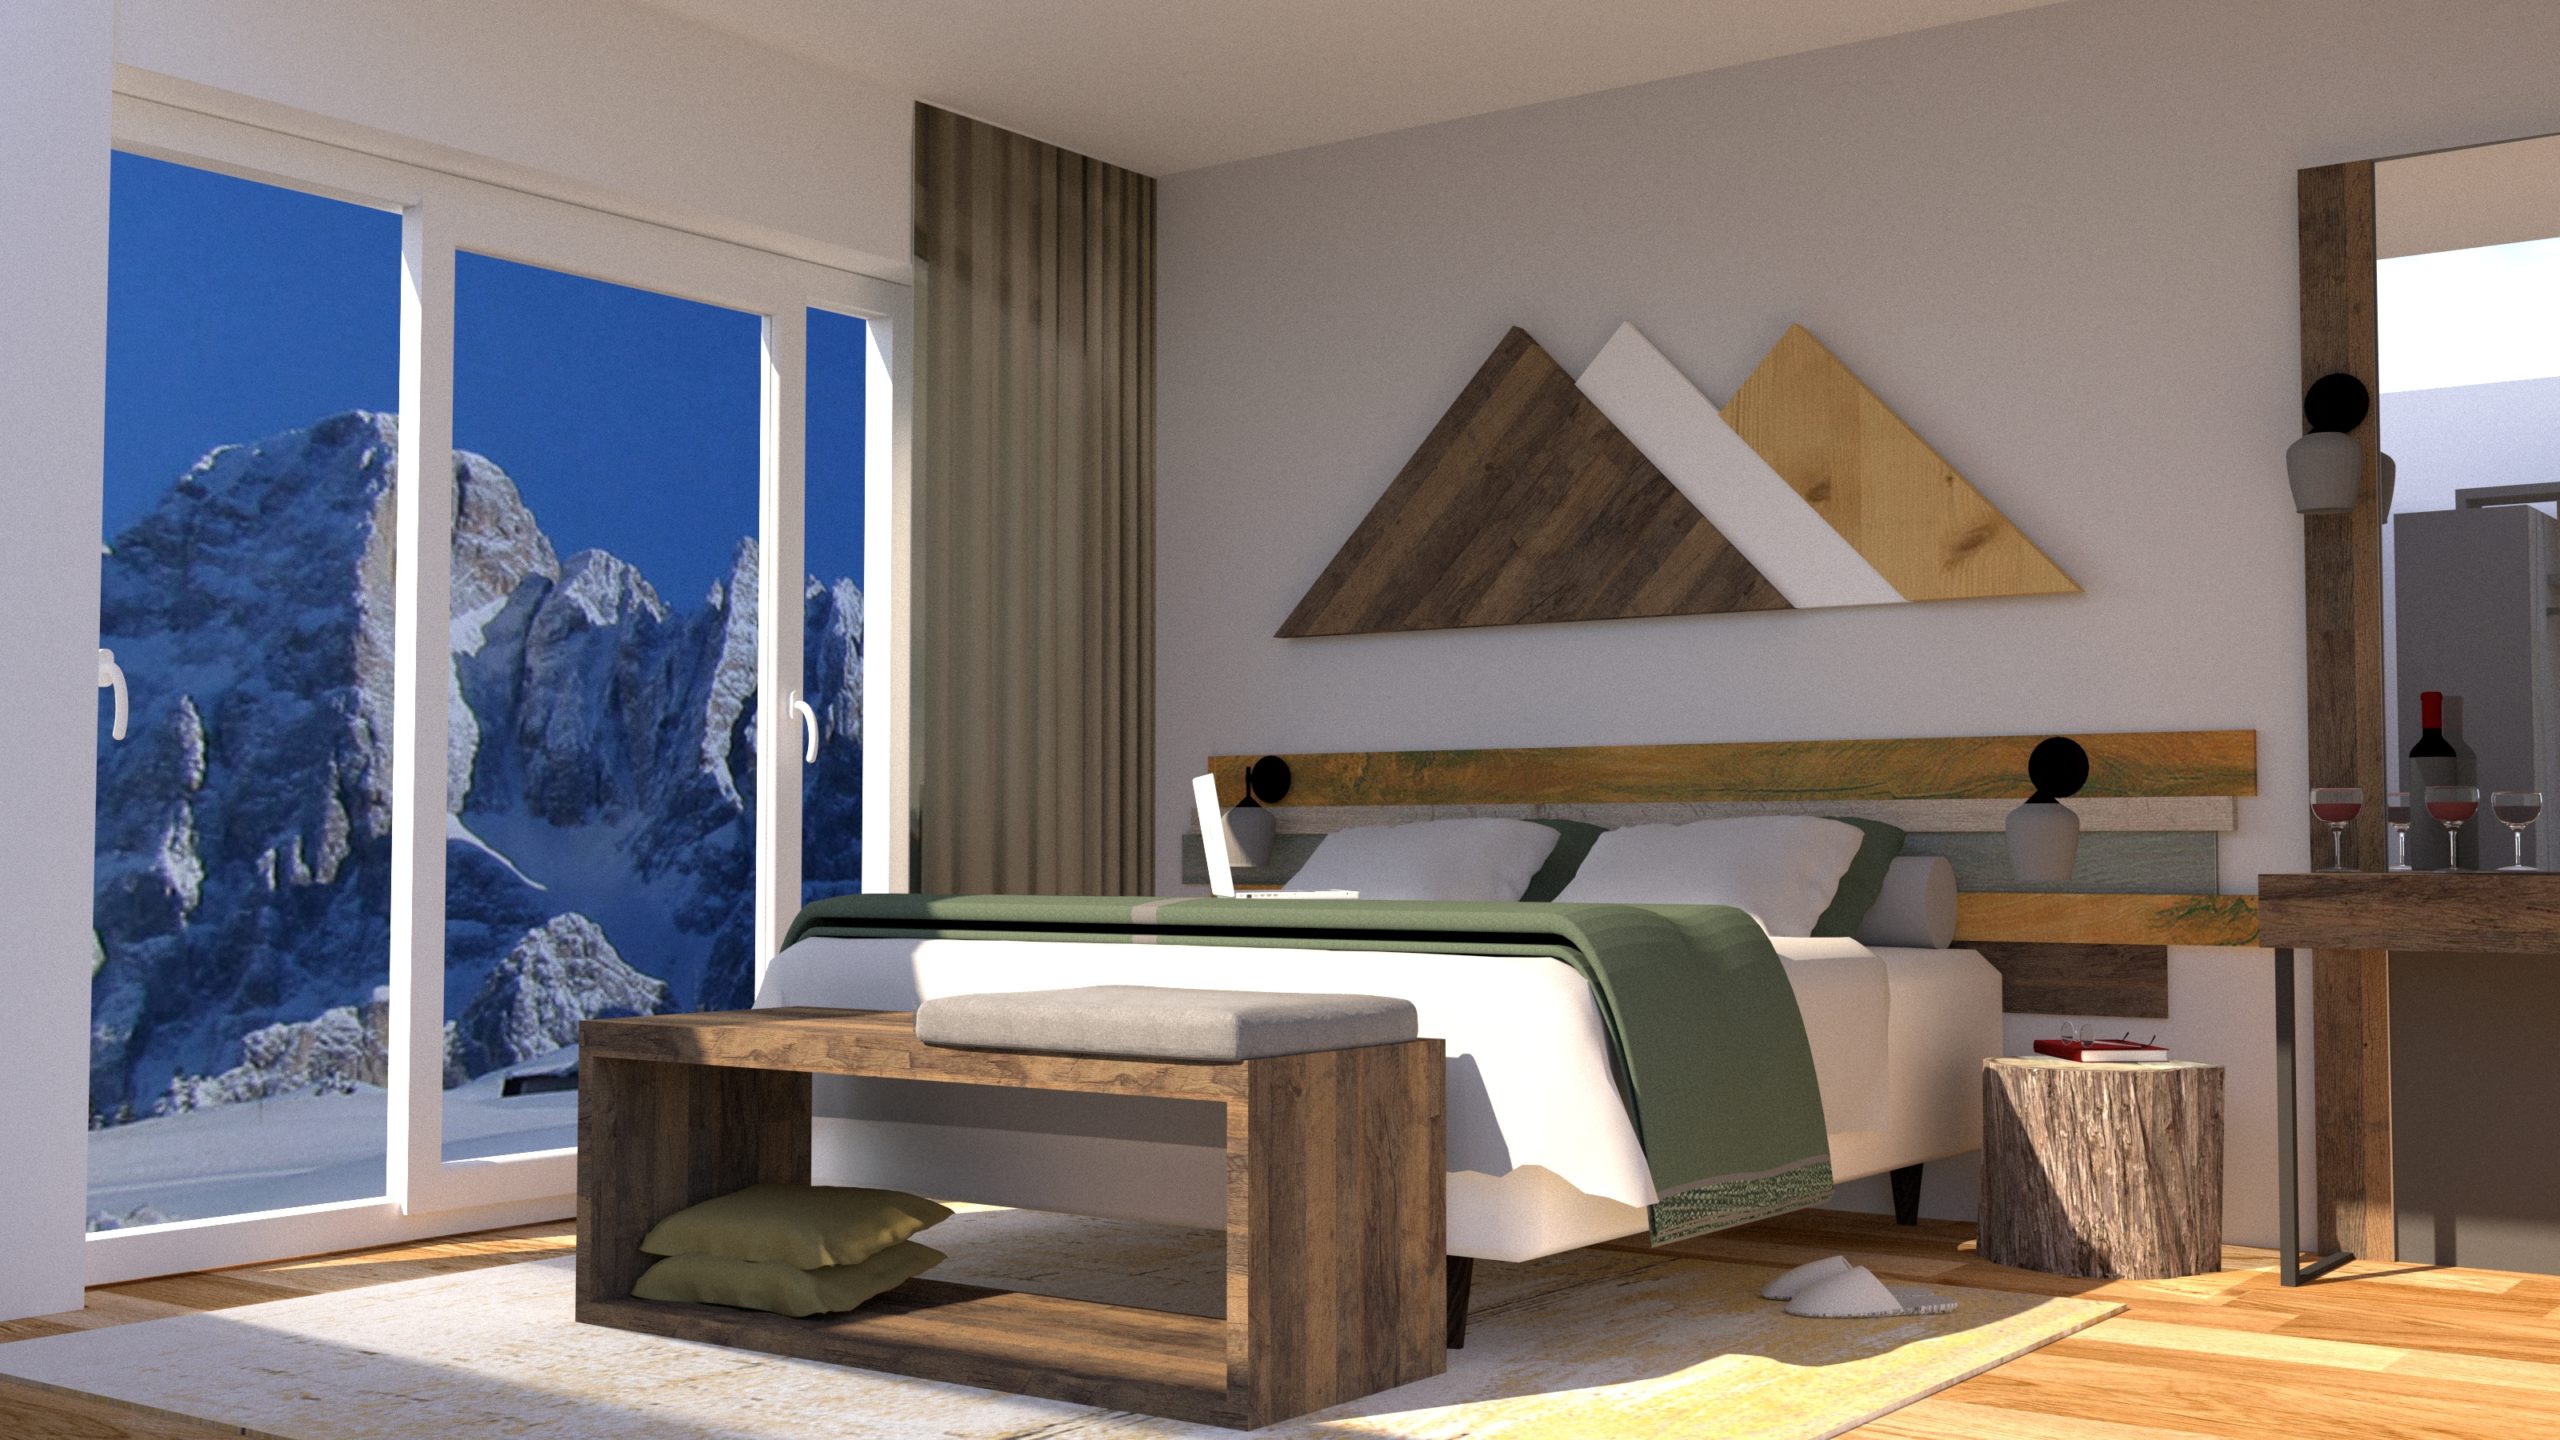 Ein geräumiges und stilvolles Zimmerdesign, das individuelle Designlösungen für Hotelzimmer zeigt und eine perfekte Kombination aus Komfort und Naturverbundenheit bietet.